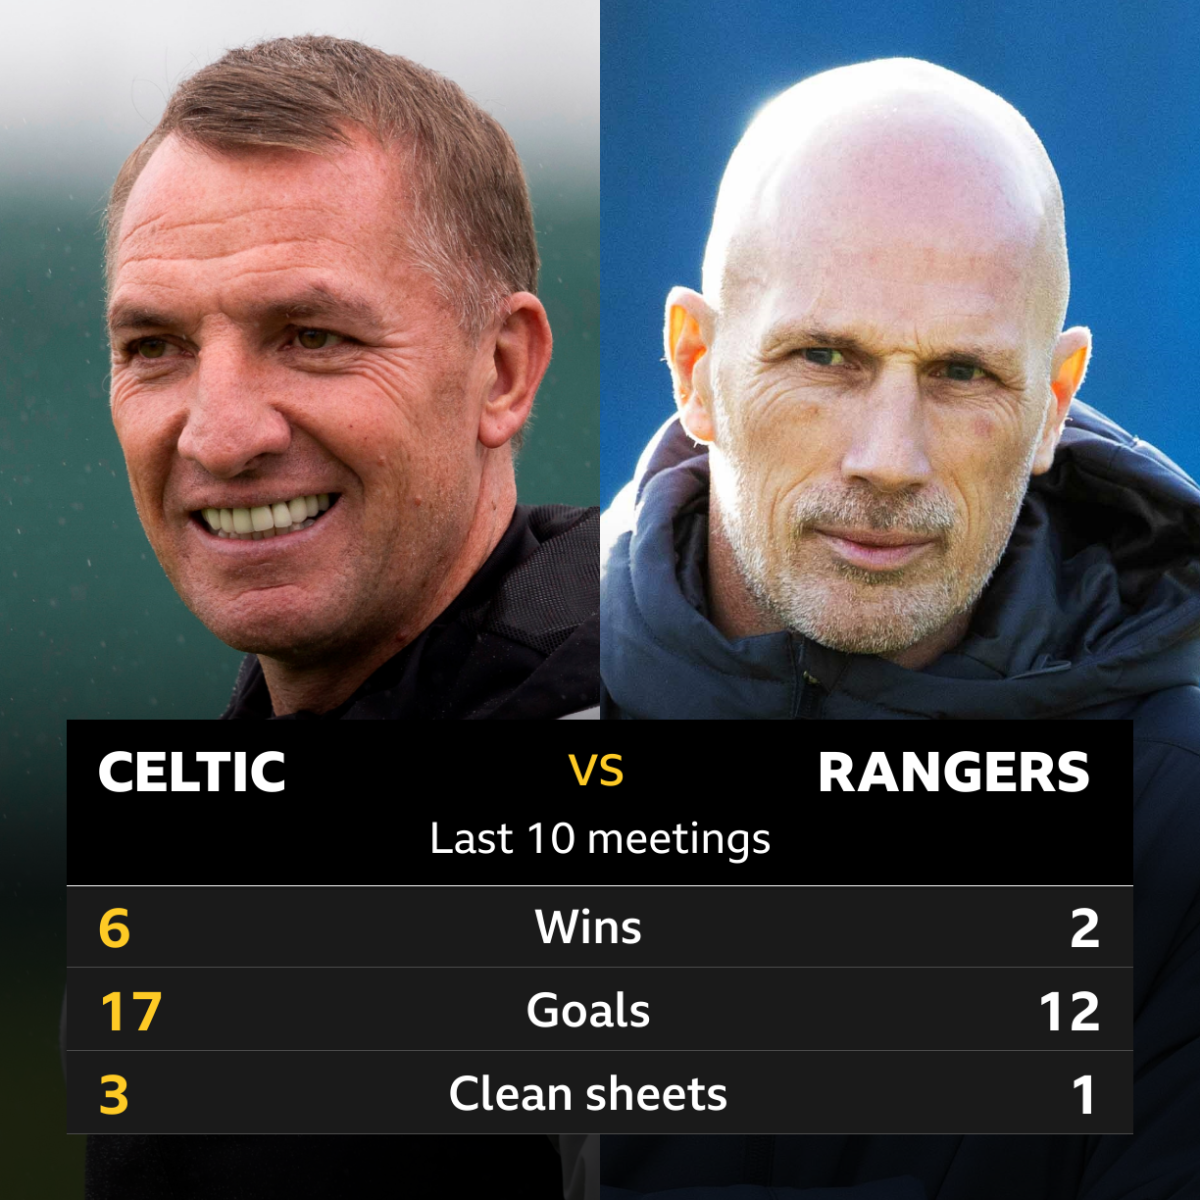 Celtic gegen Rangers: Auswahl der Statistiken